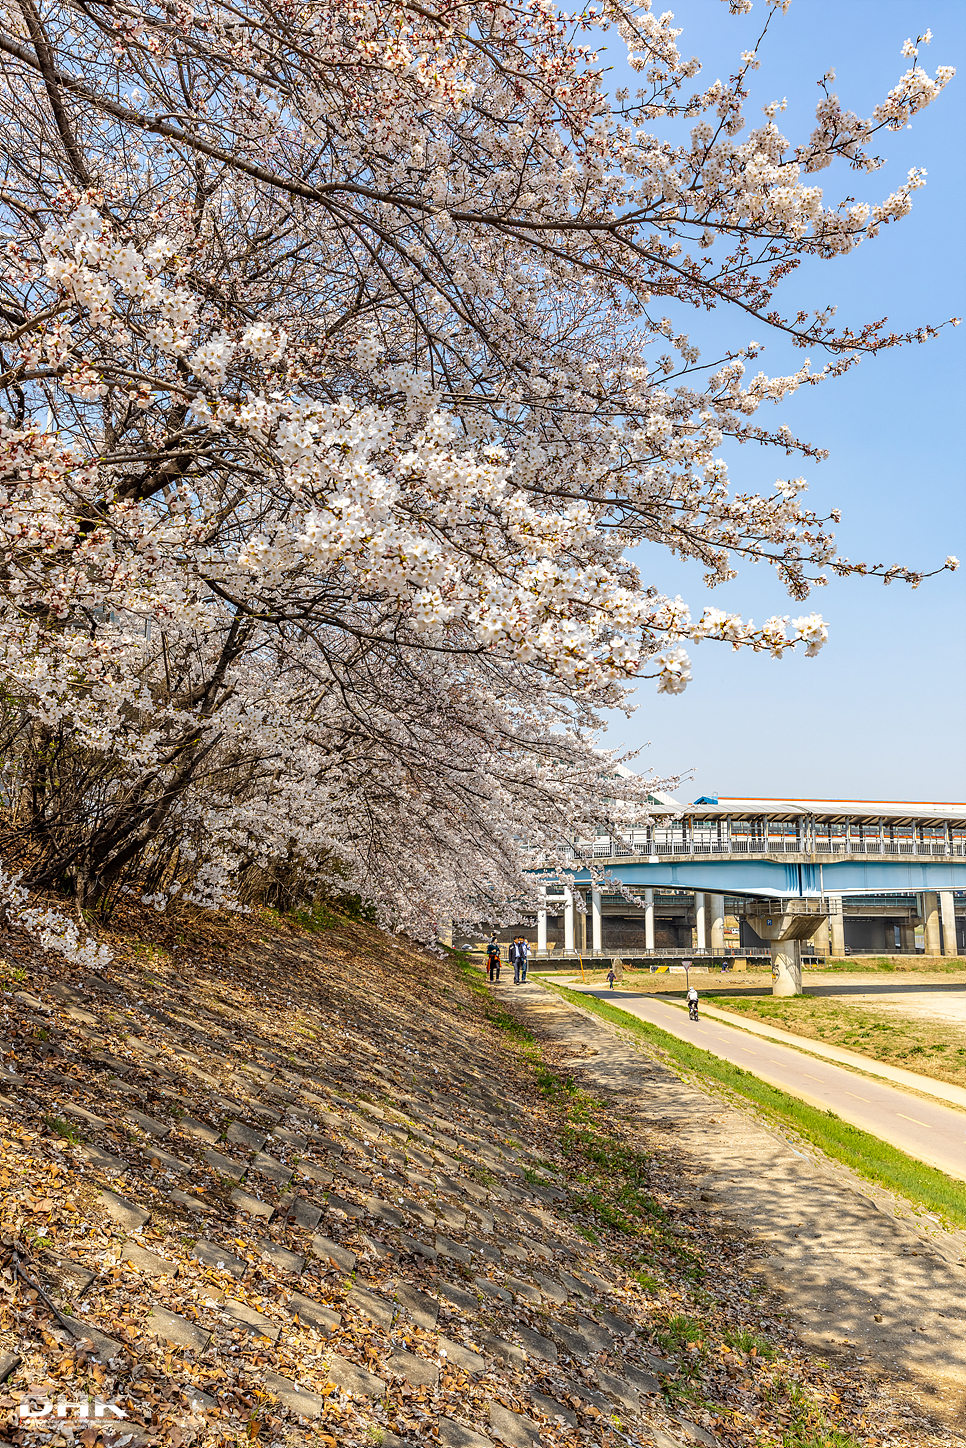 서울 벚꽃 명소 안양천 벚꽃길 4월 데이트 가볼만한곳 서울 벚꽃개화시기